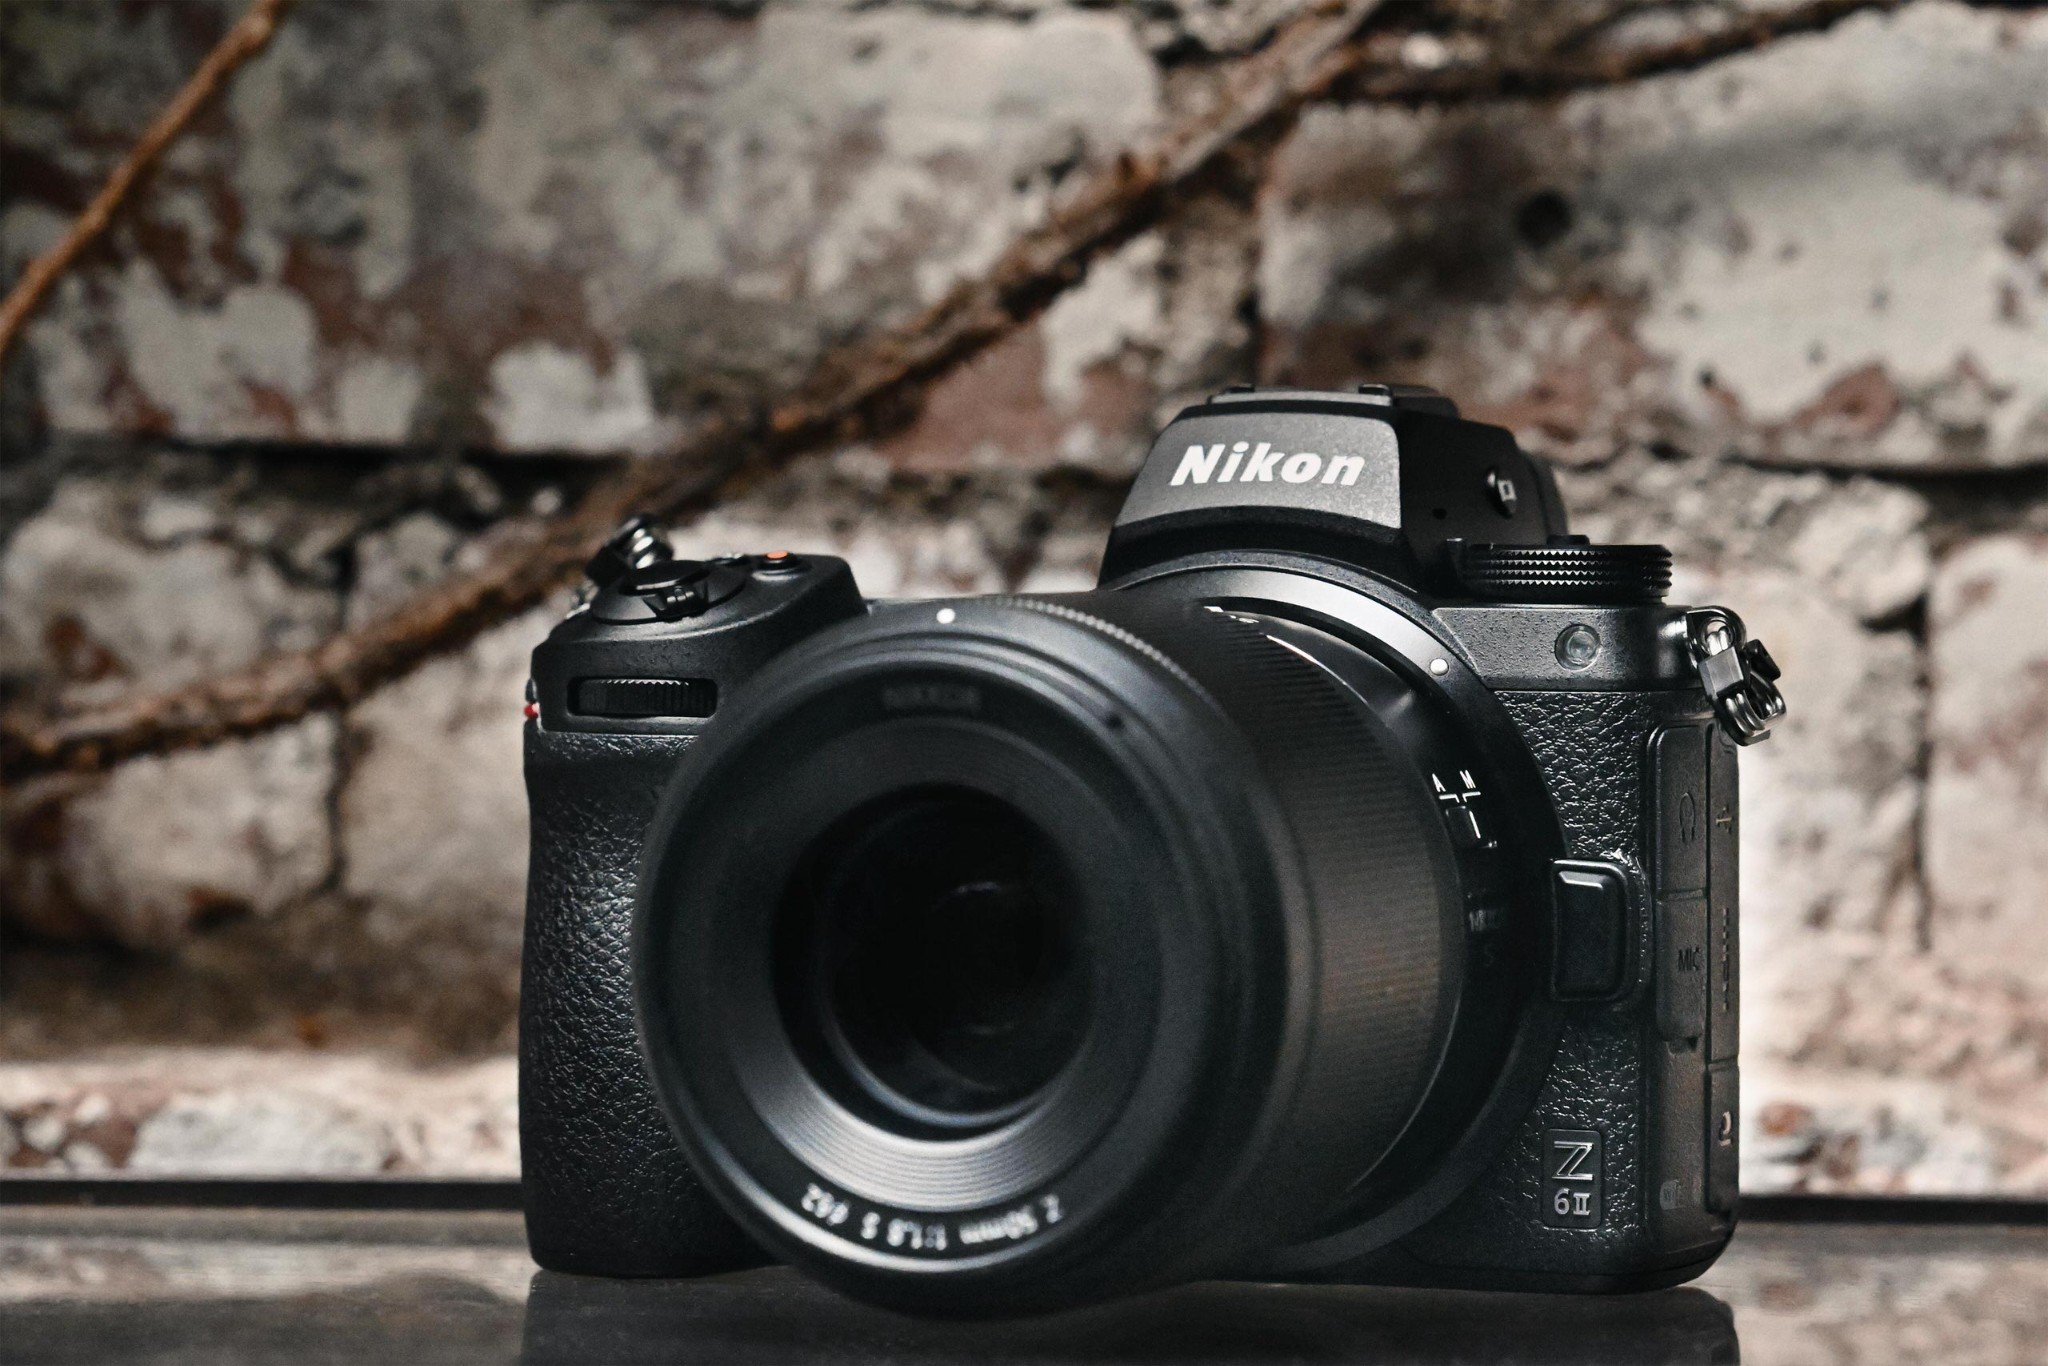 Nikon Z6 II và Nikon Z7 II ra mắt: Nâng cấp khe thẻ nhớ, vi xử lý kép và quay video 4K/60p